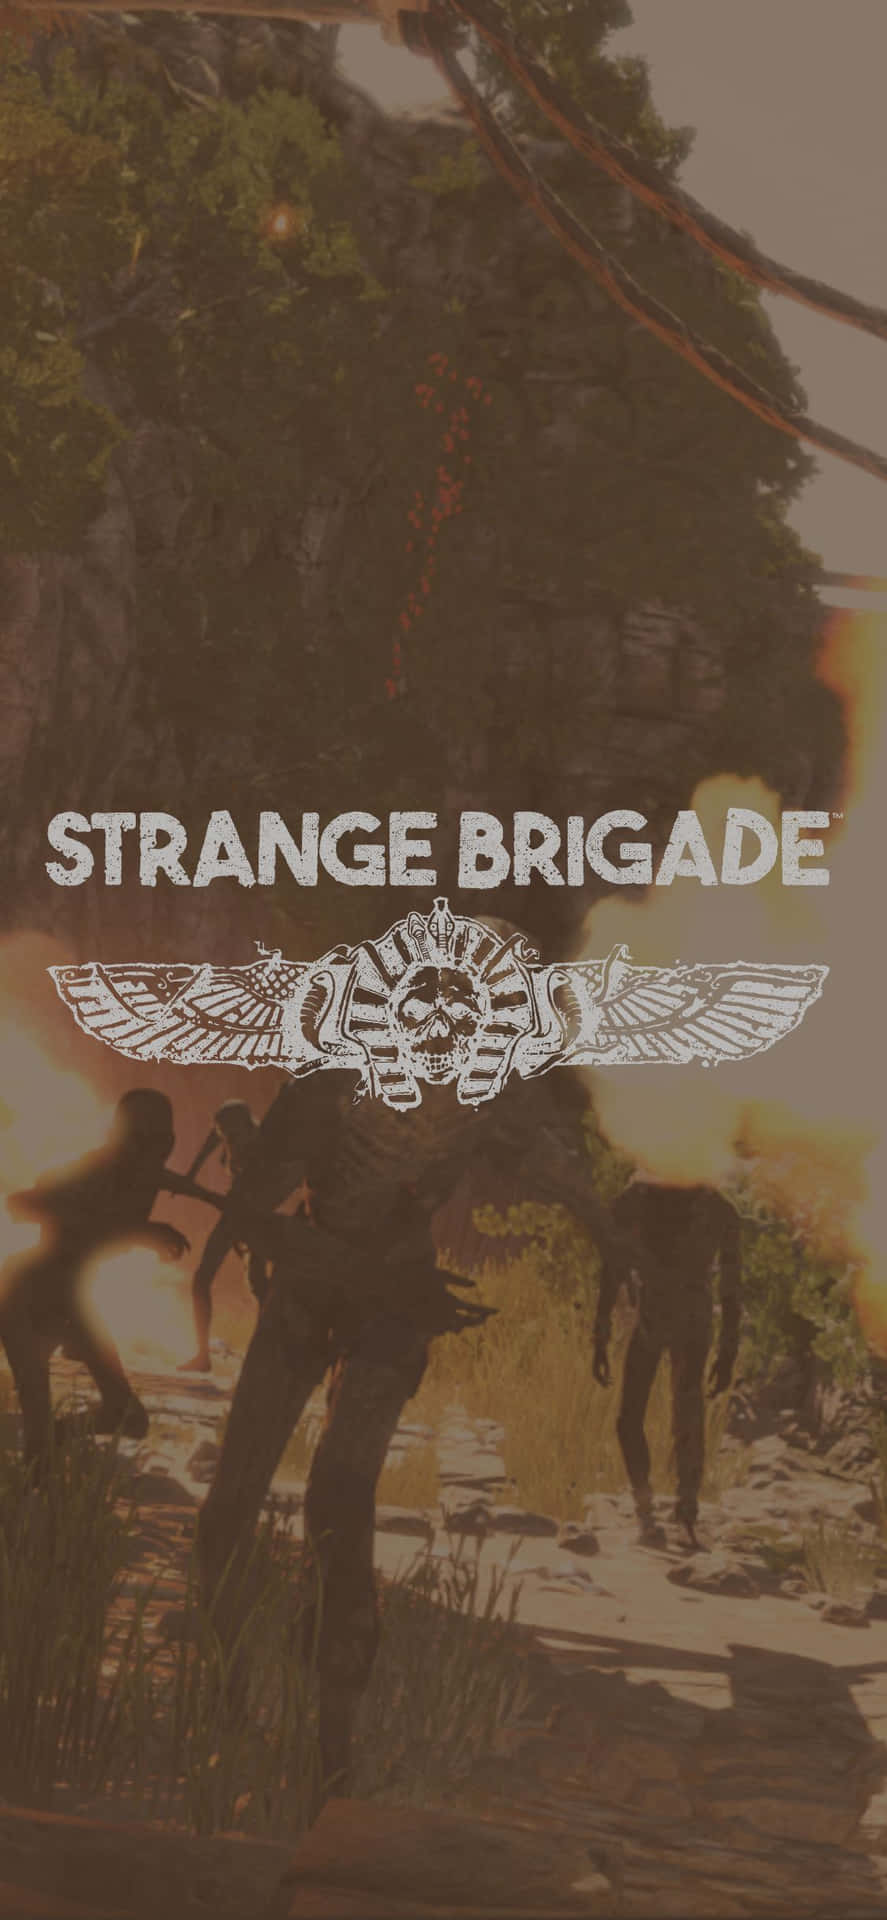 Bliv med på eventyret med Iphone X Strange Brigade